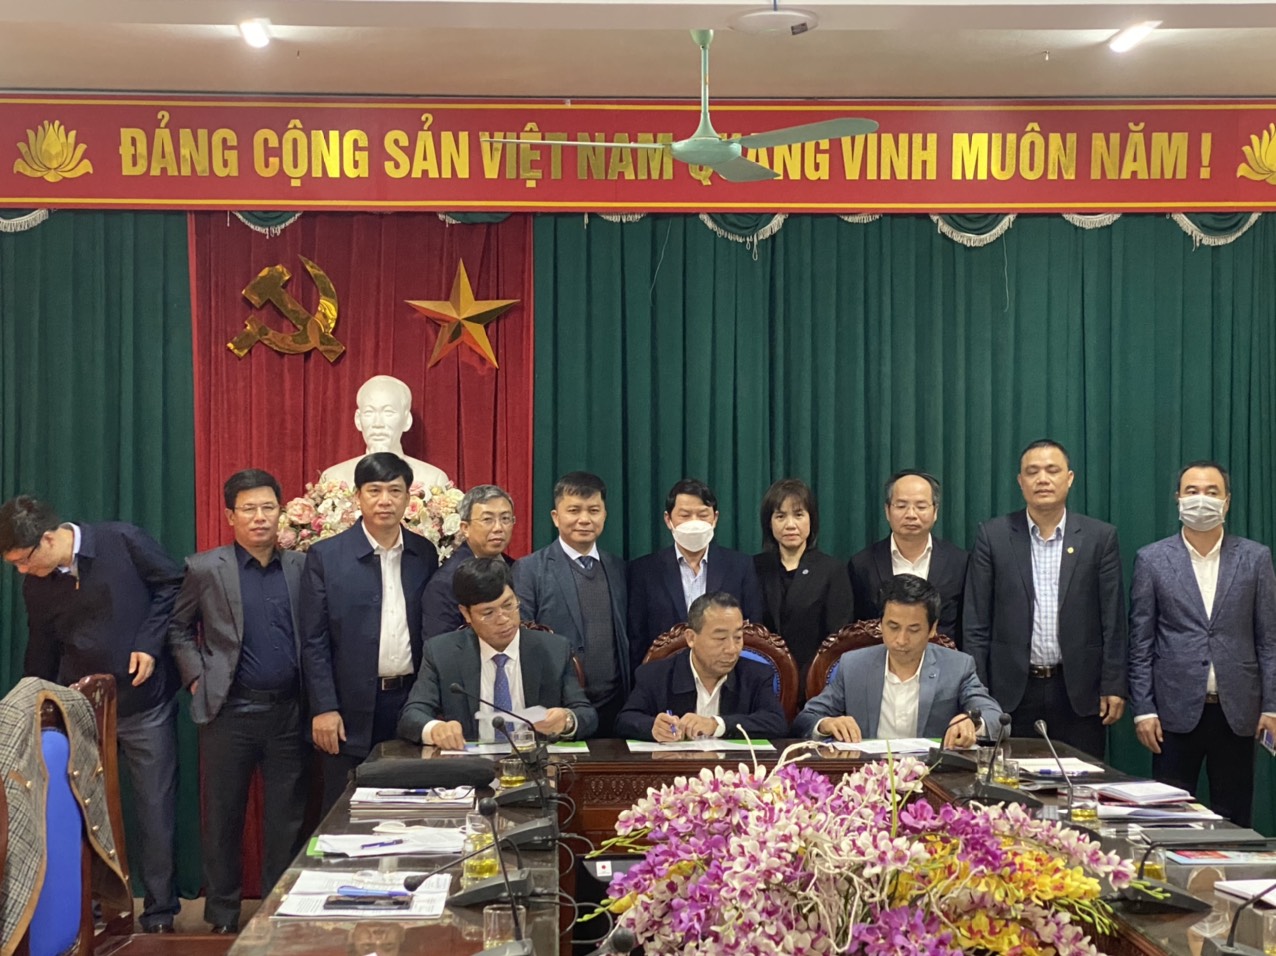 Sở Nông nghiệp và PTNT Nghệ An tổ chức hội nghị triển khai chương trình hợp tác xúc tiến nông nghiệp năm 2022